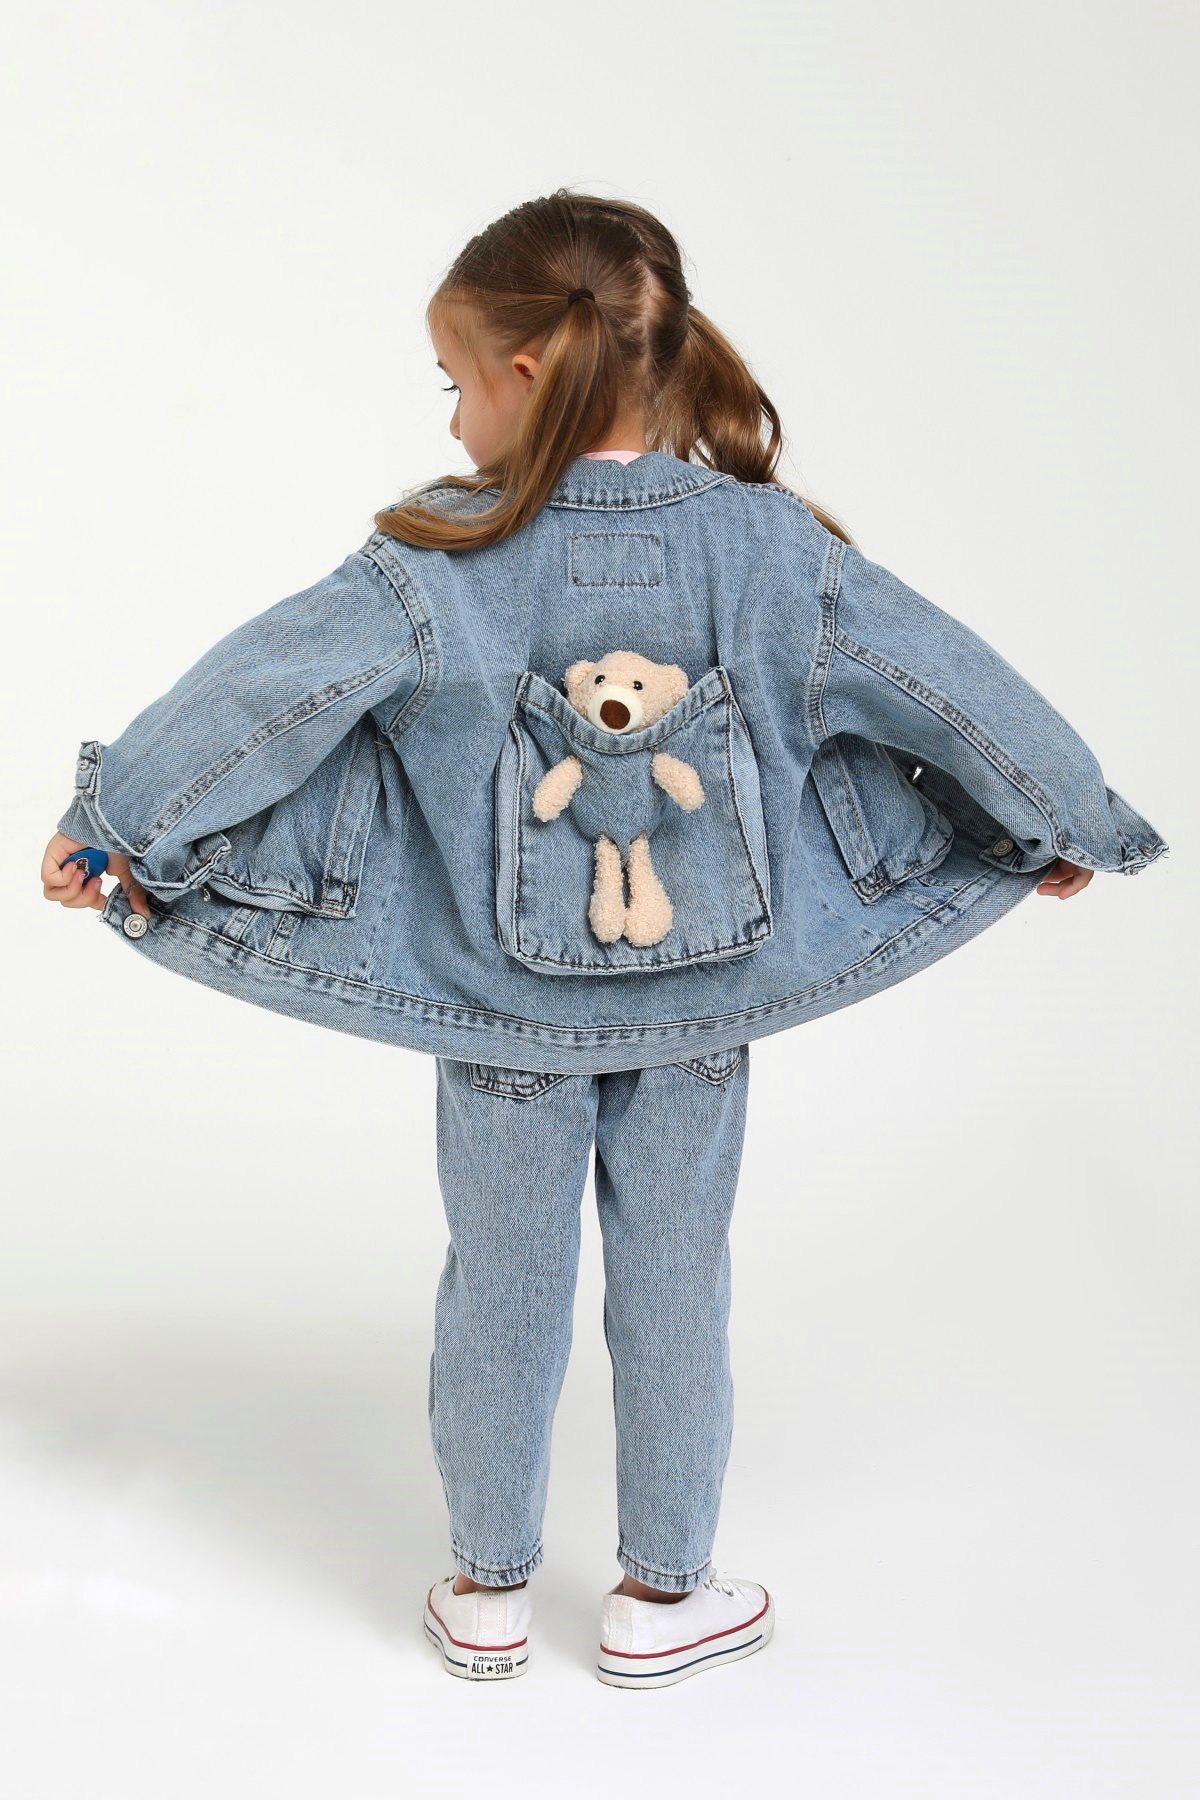 Unisex Denim Jacket With Bear Detail / 9-12M | 2Y | 3Y | 4Y - Kids Fashion Turkey